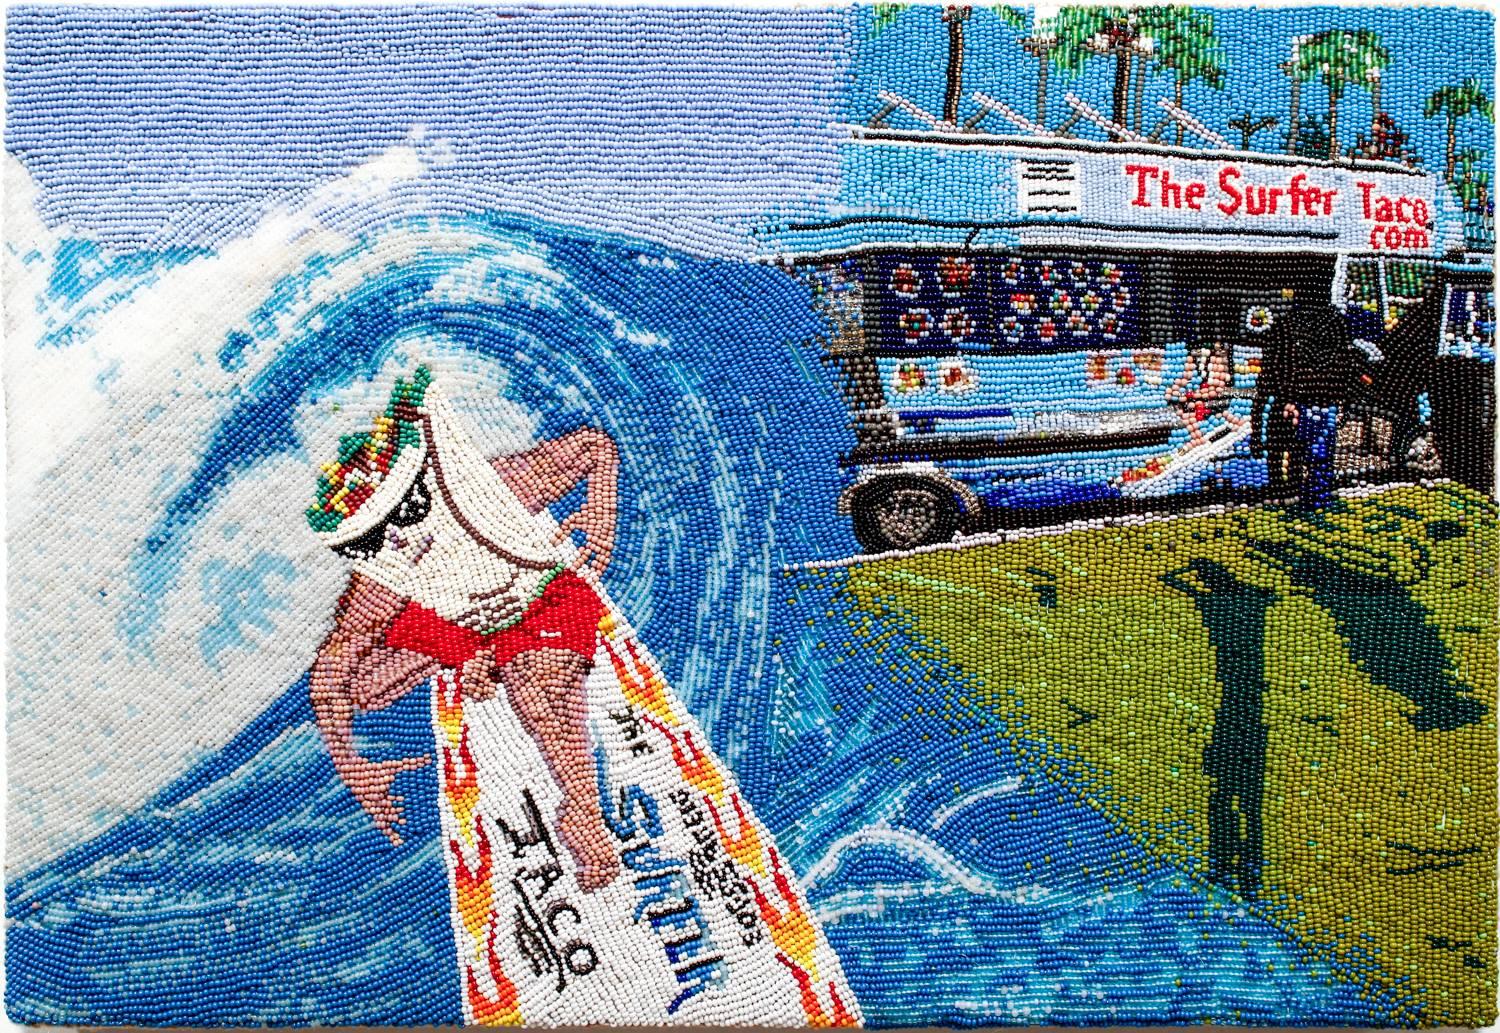 Surfer Taco - Art by Corey Stein